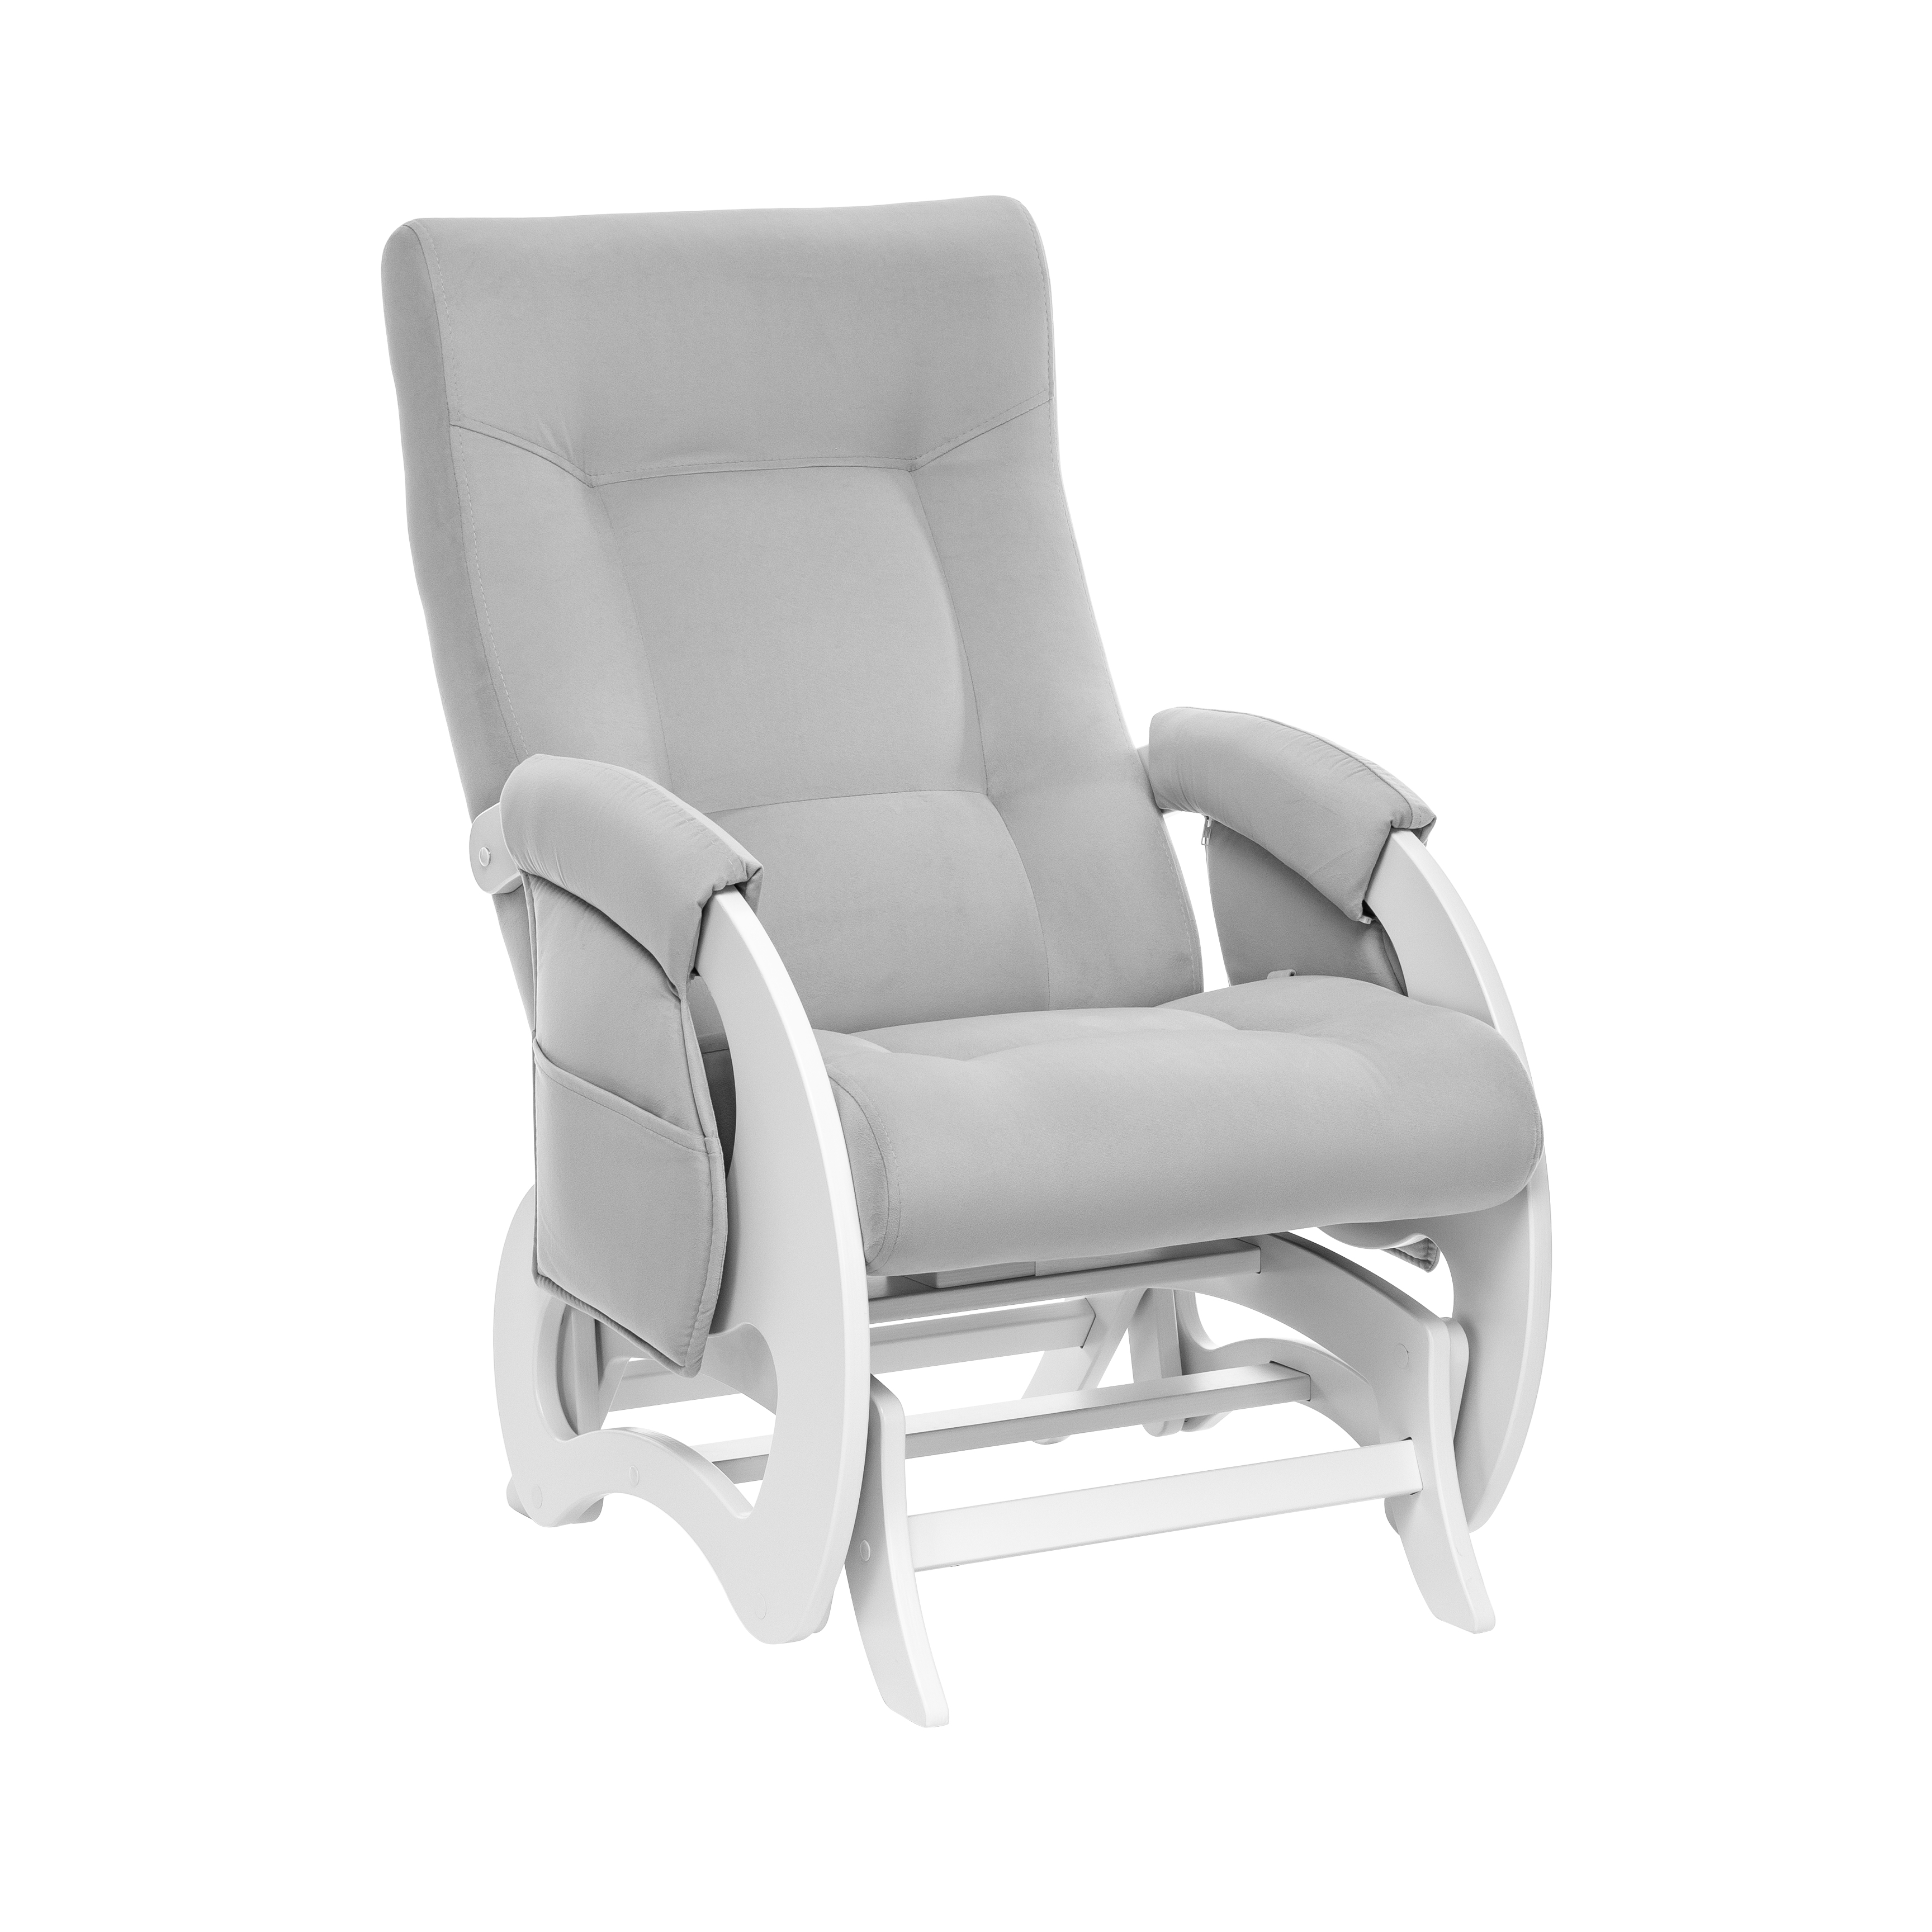 Кресло-глайдер для кормления Milli Ария Дуб молочный V51 Light Grey ария том 2